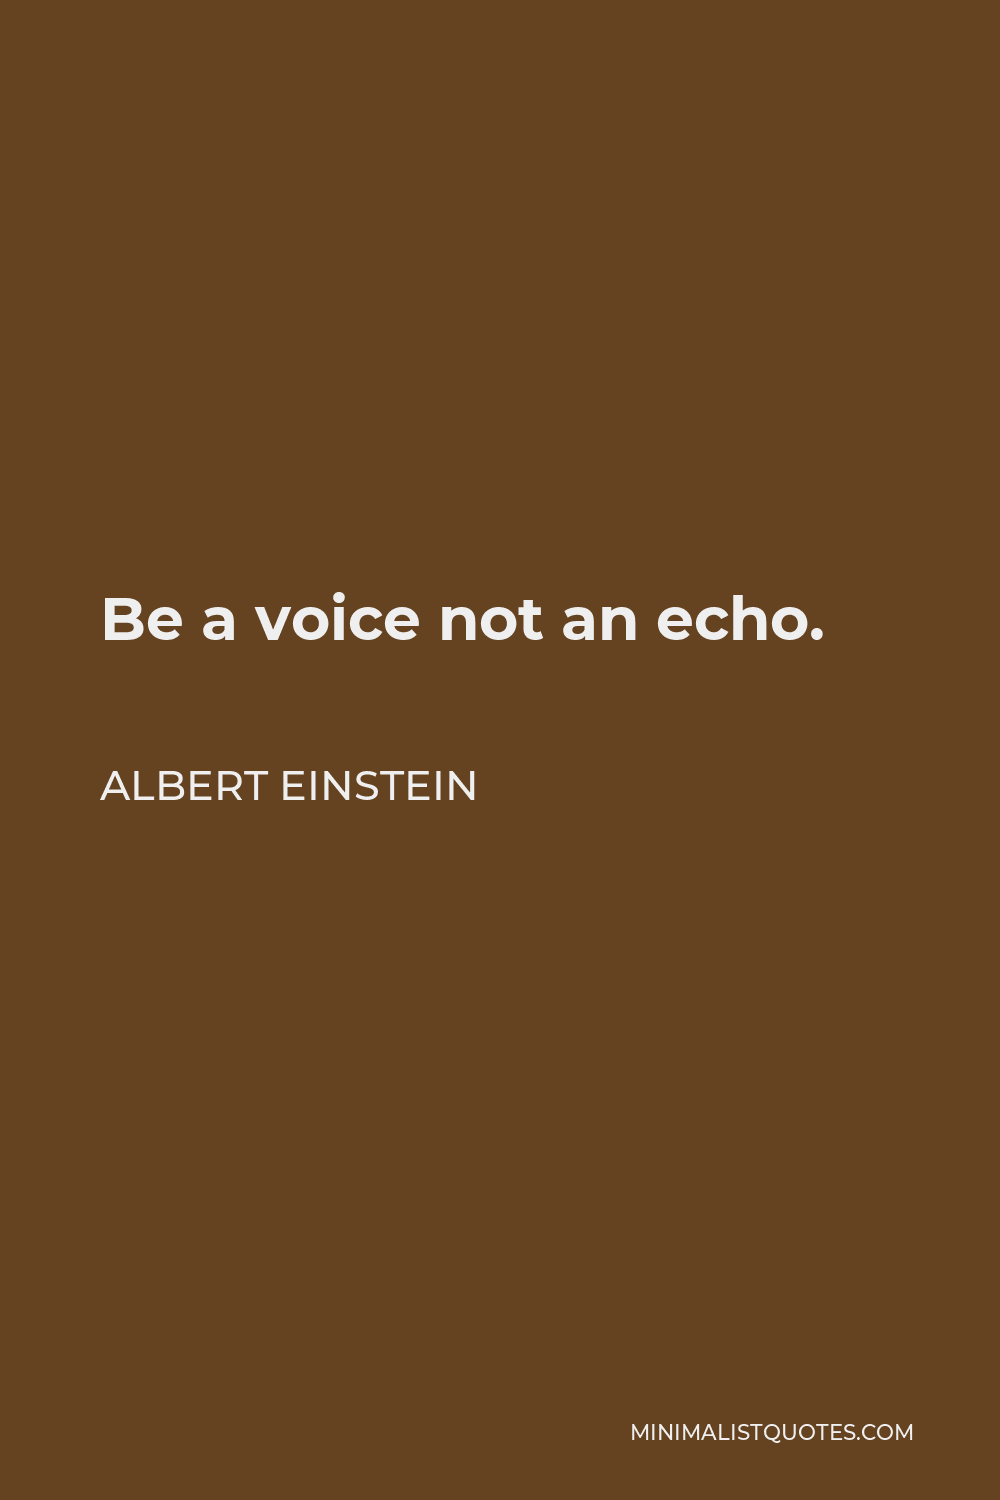 Albert Einstein Quote - Be a voice not an echo.